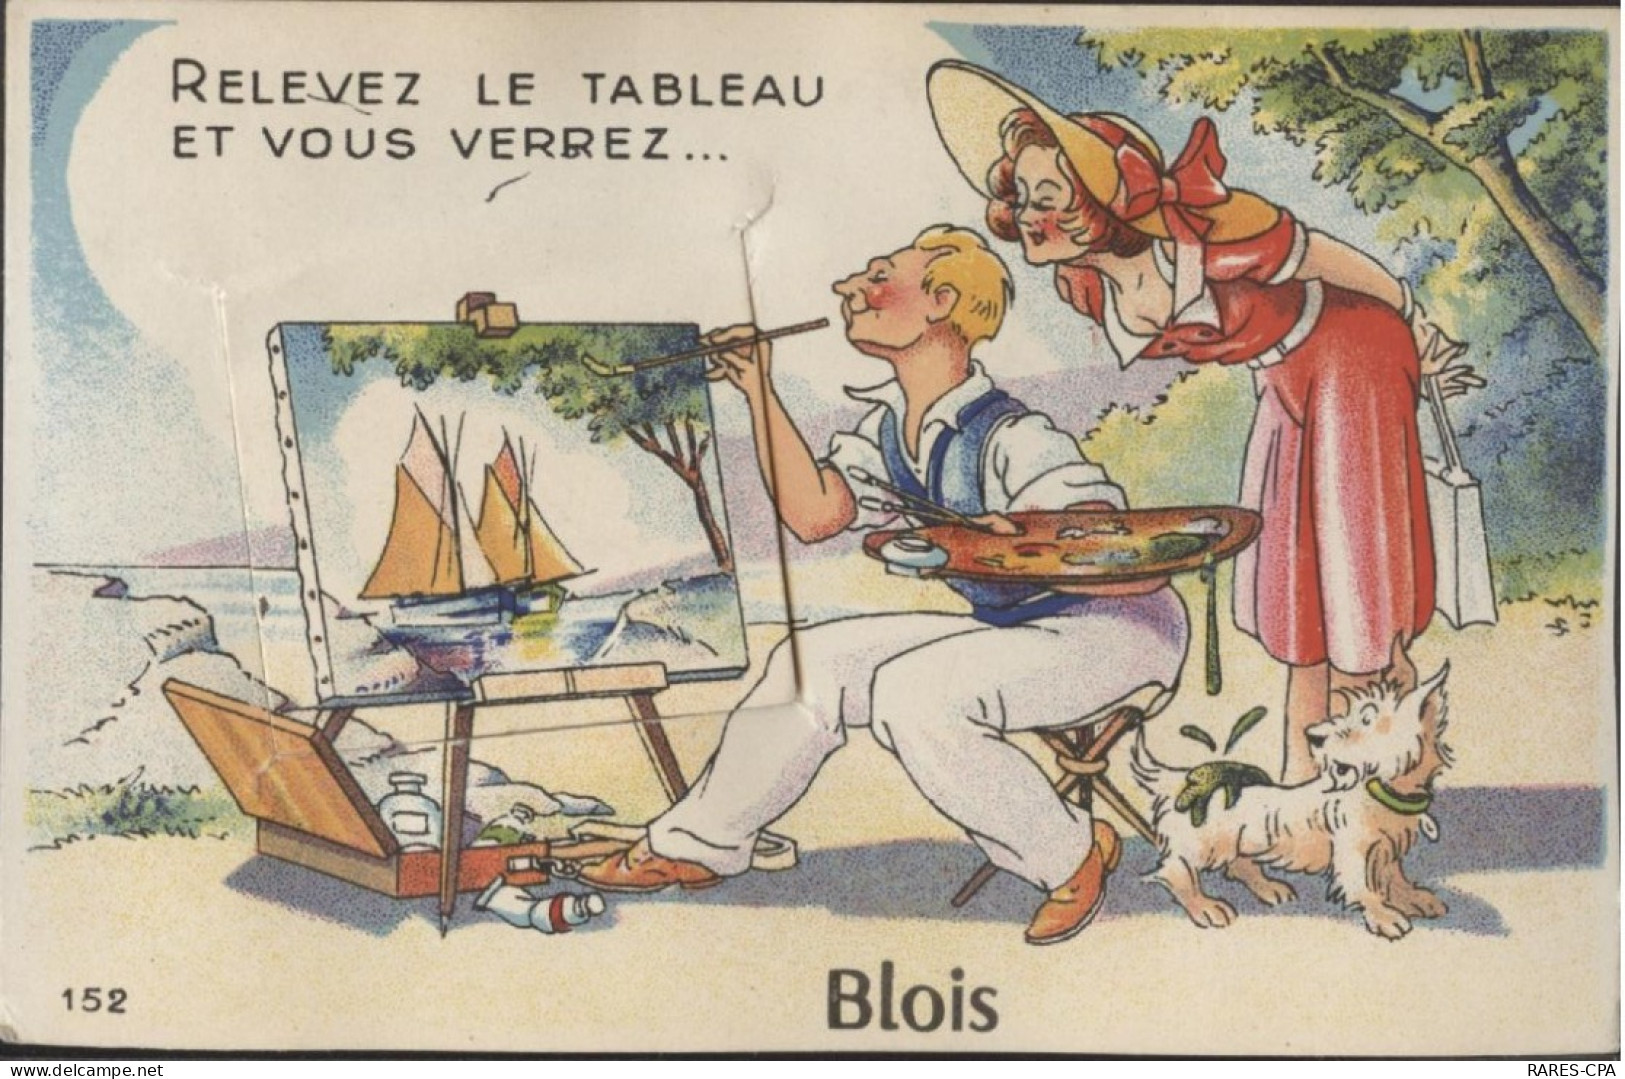 41 - BLOIS - Carte à Système - RELEVEZ LE TABLEAU ET VOUS VERREZ.....BLOIS - RCPA 01 - Blois